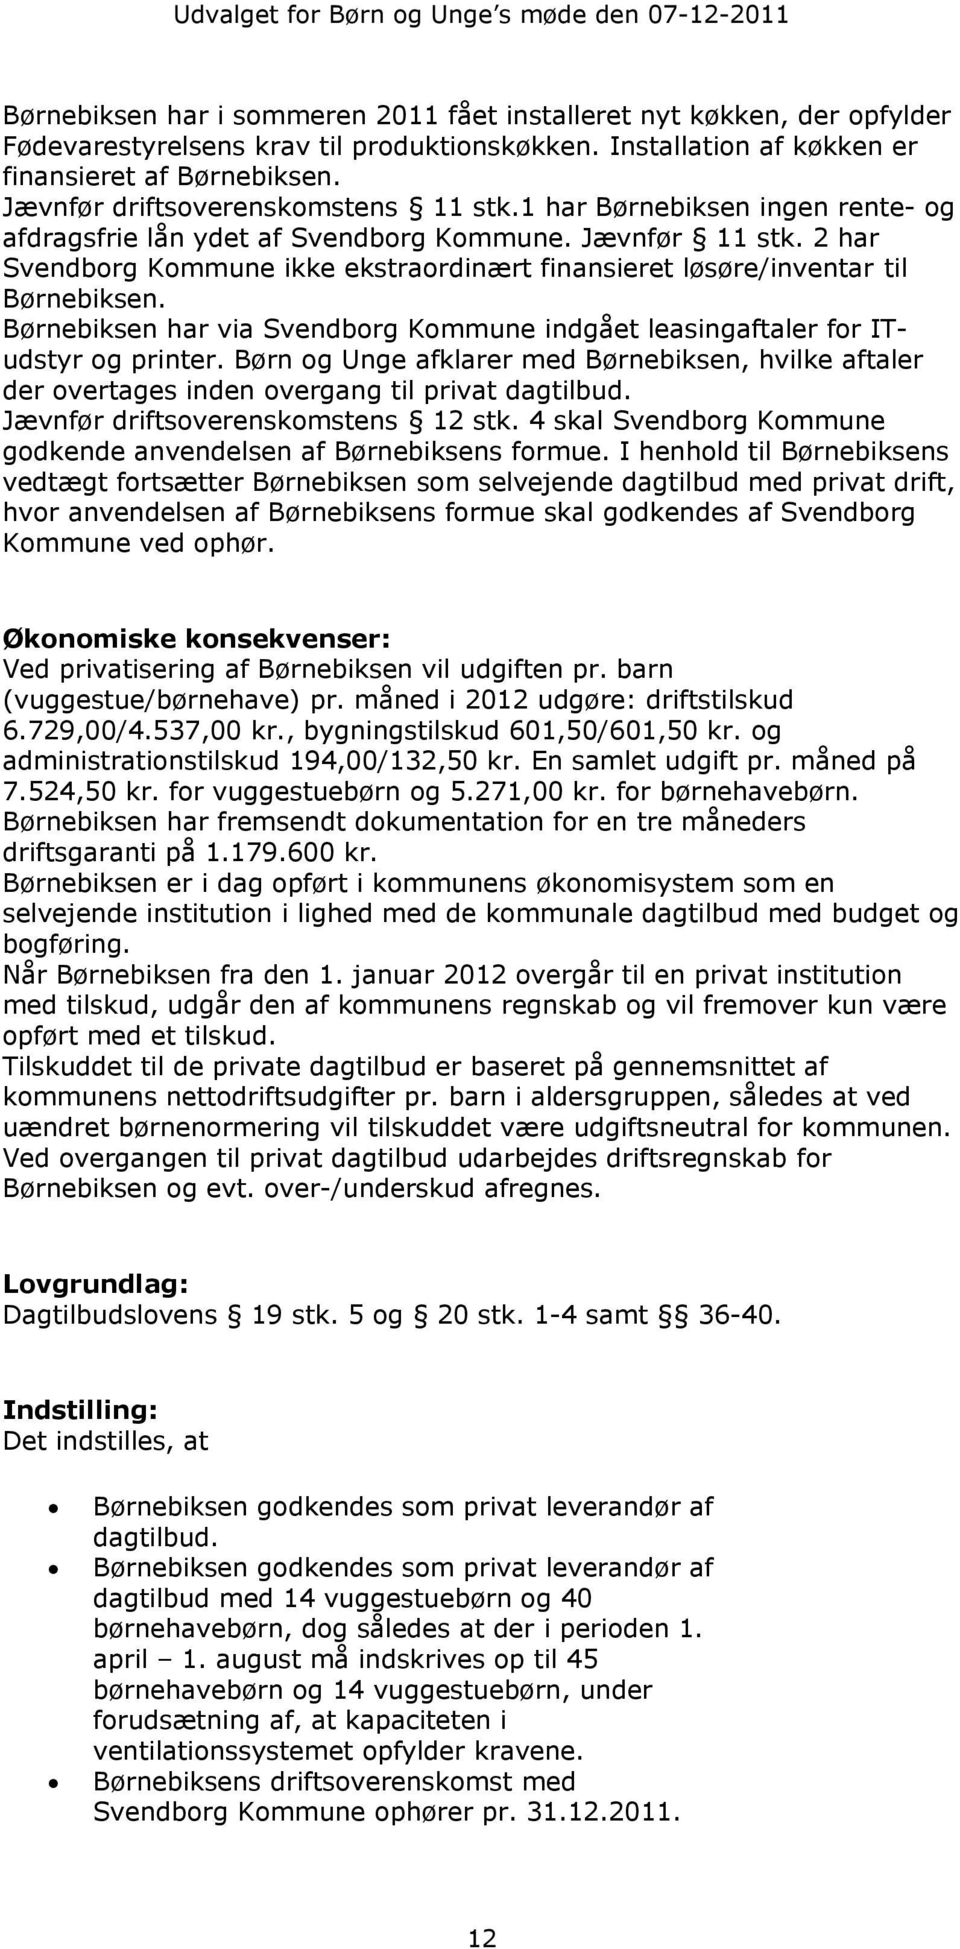 2 har Svendborg Kommune ikke ekstraordinært finansieret løsøre/inventar til Børnebiksen. Børnebiksen har via Svendborg Kommune indgået leasingaftaler for ITudstyr og printer.